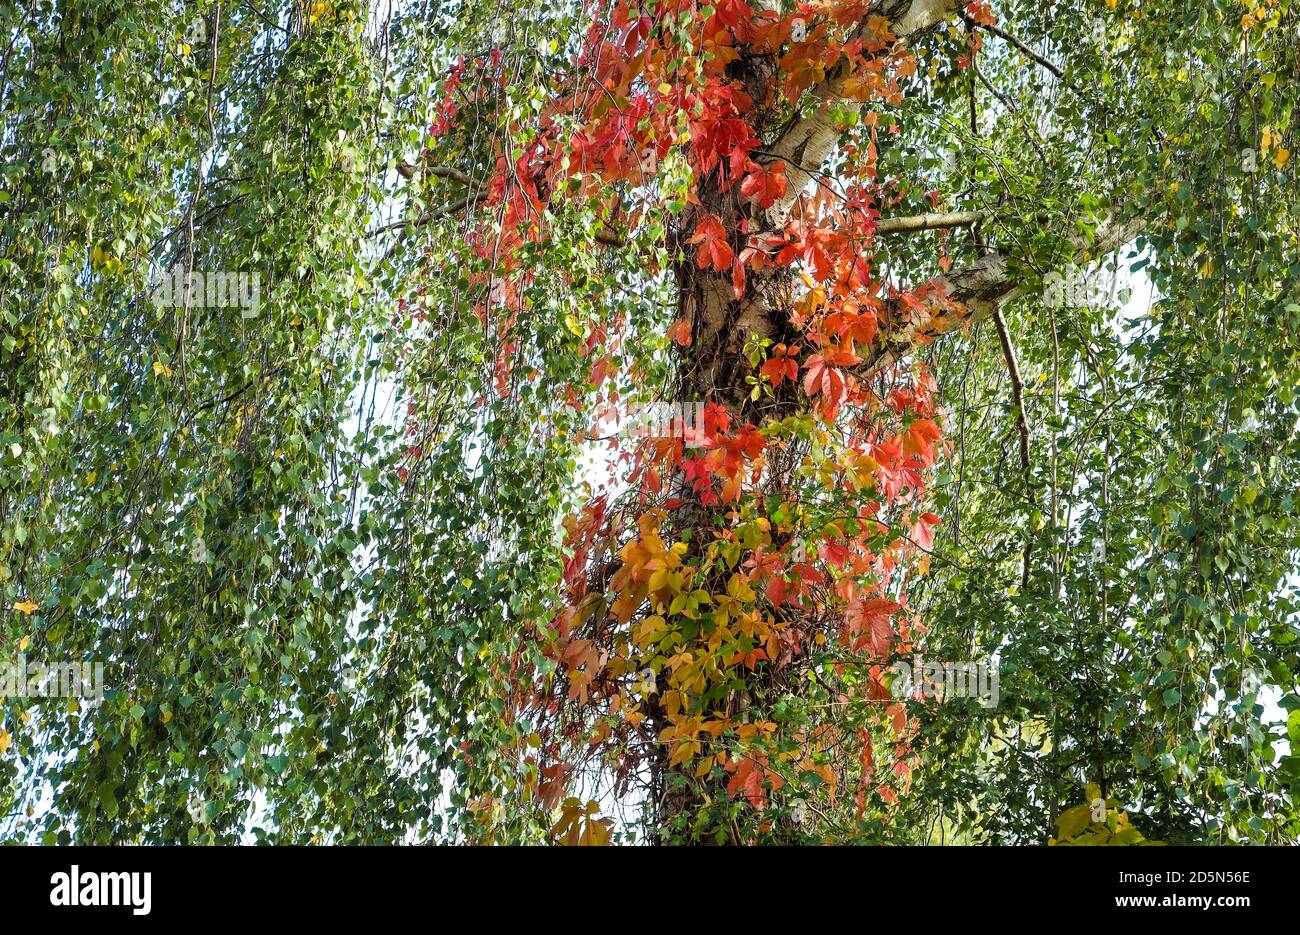 Die Bäume sind im Herbst am farbenprächtigsten und ich denke, sie sind auch die schönsten. Stockfoto